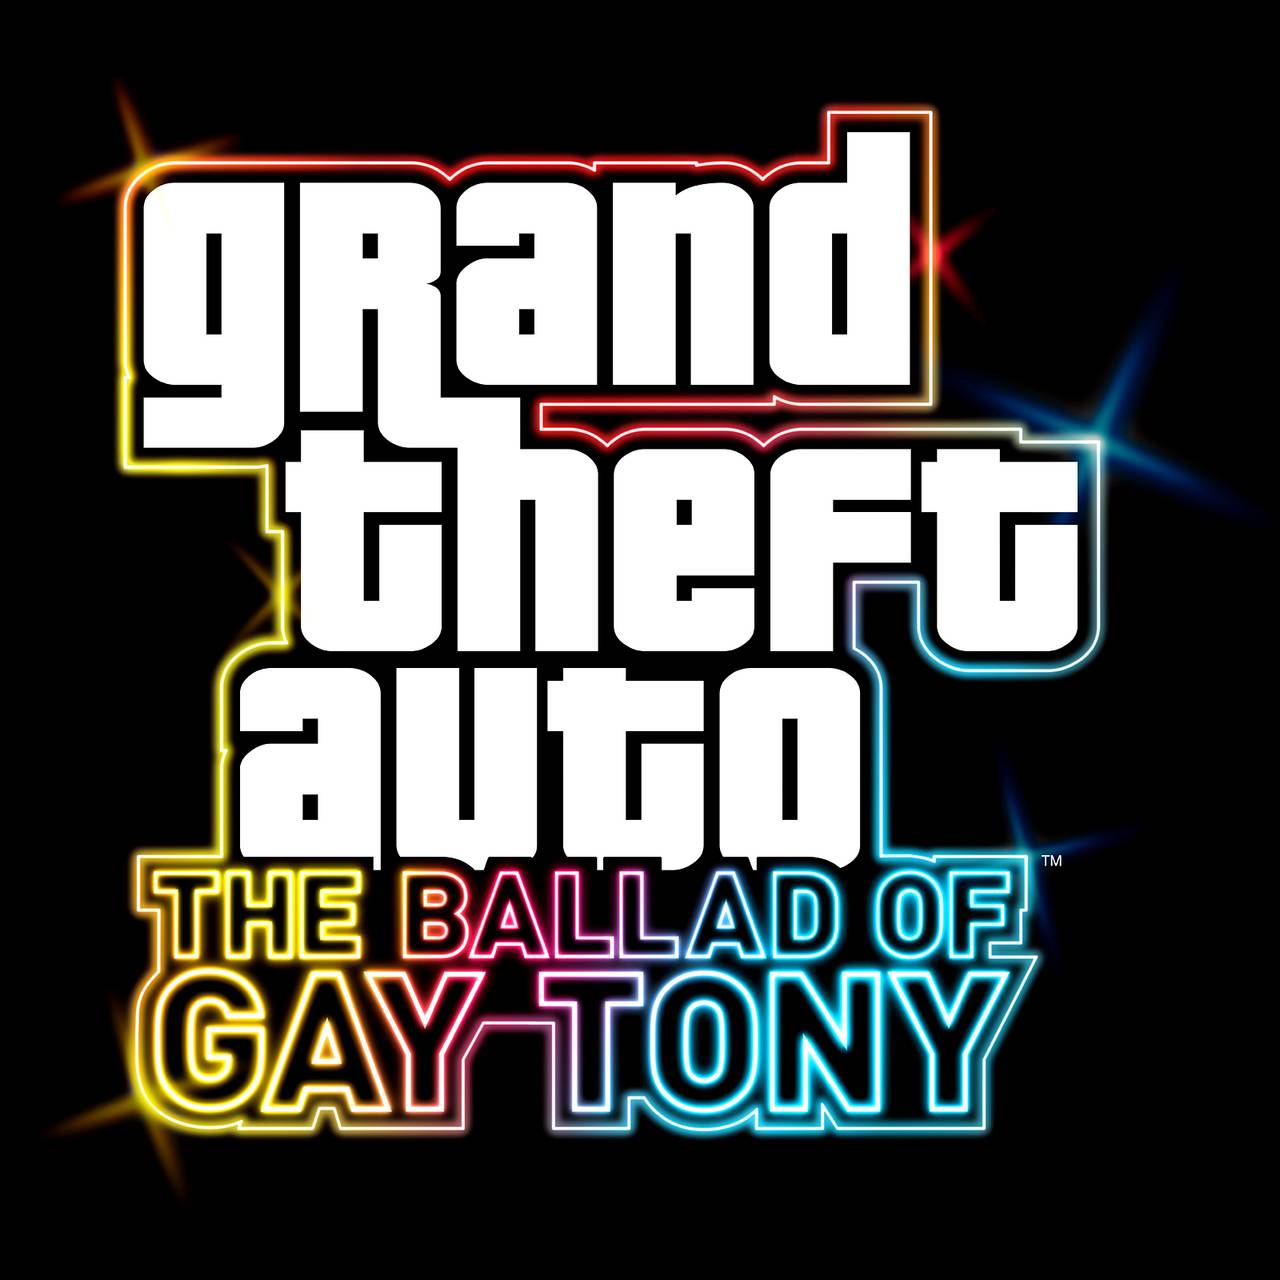 GTA: The Ballad of Gay Tony